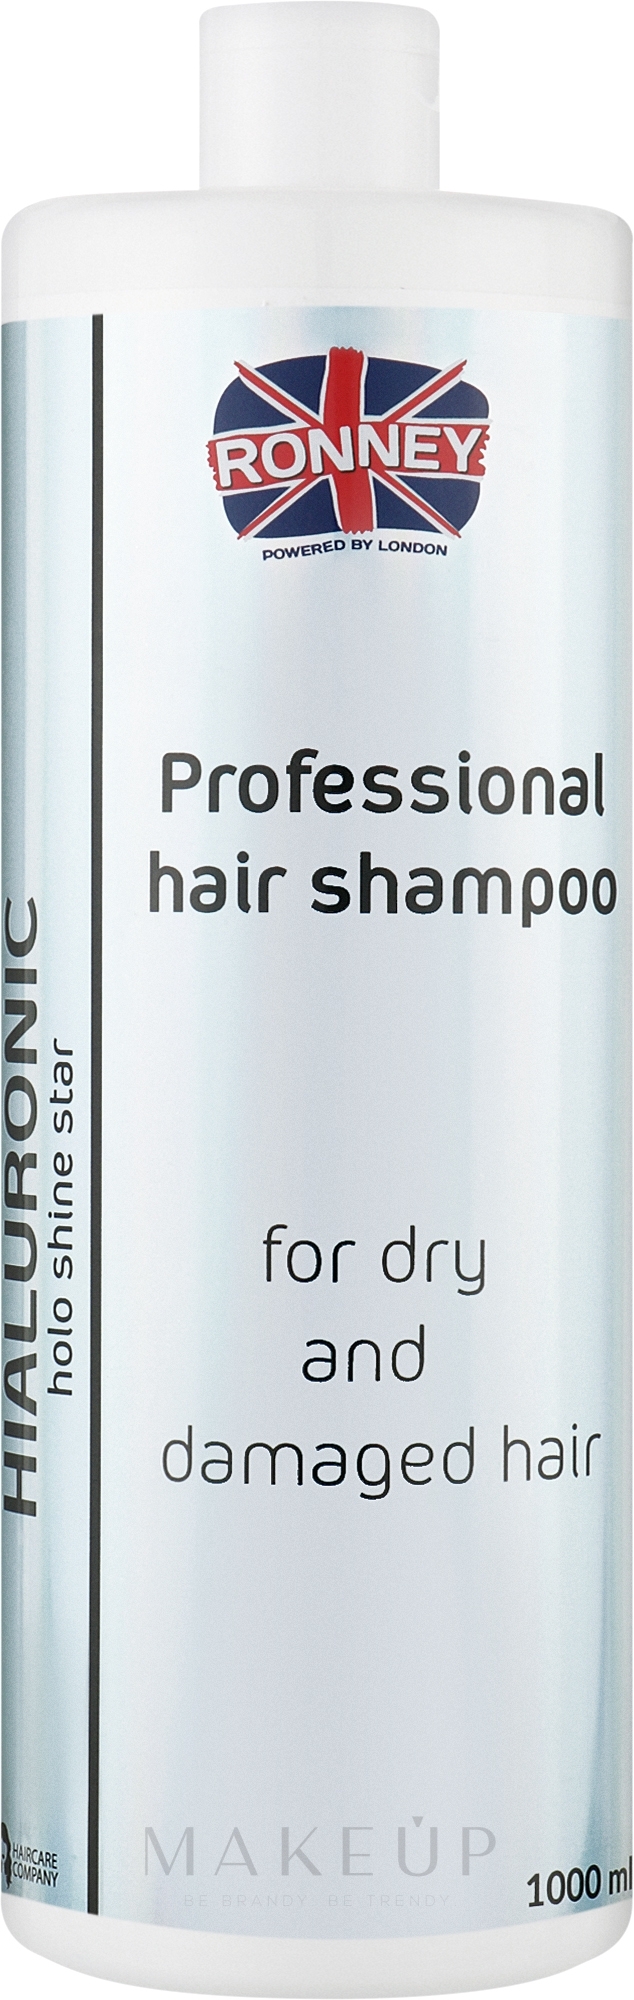 Feuchtigkeitsspendendes Shampoo mit Hyaluronsäure für trockenes und strapaziertes Haar - Ronney Professional Holo Shine Star Hialuronic Shampoo — Bild 1000 ml